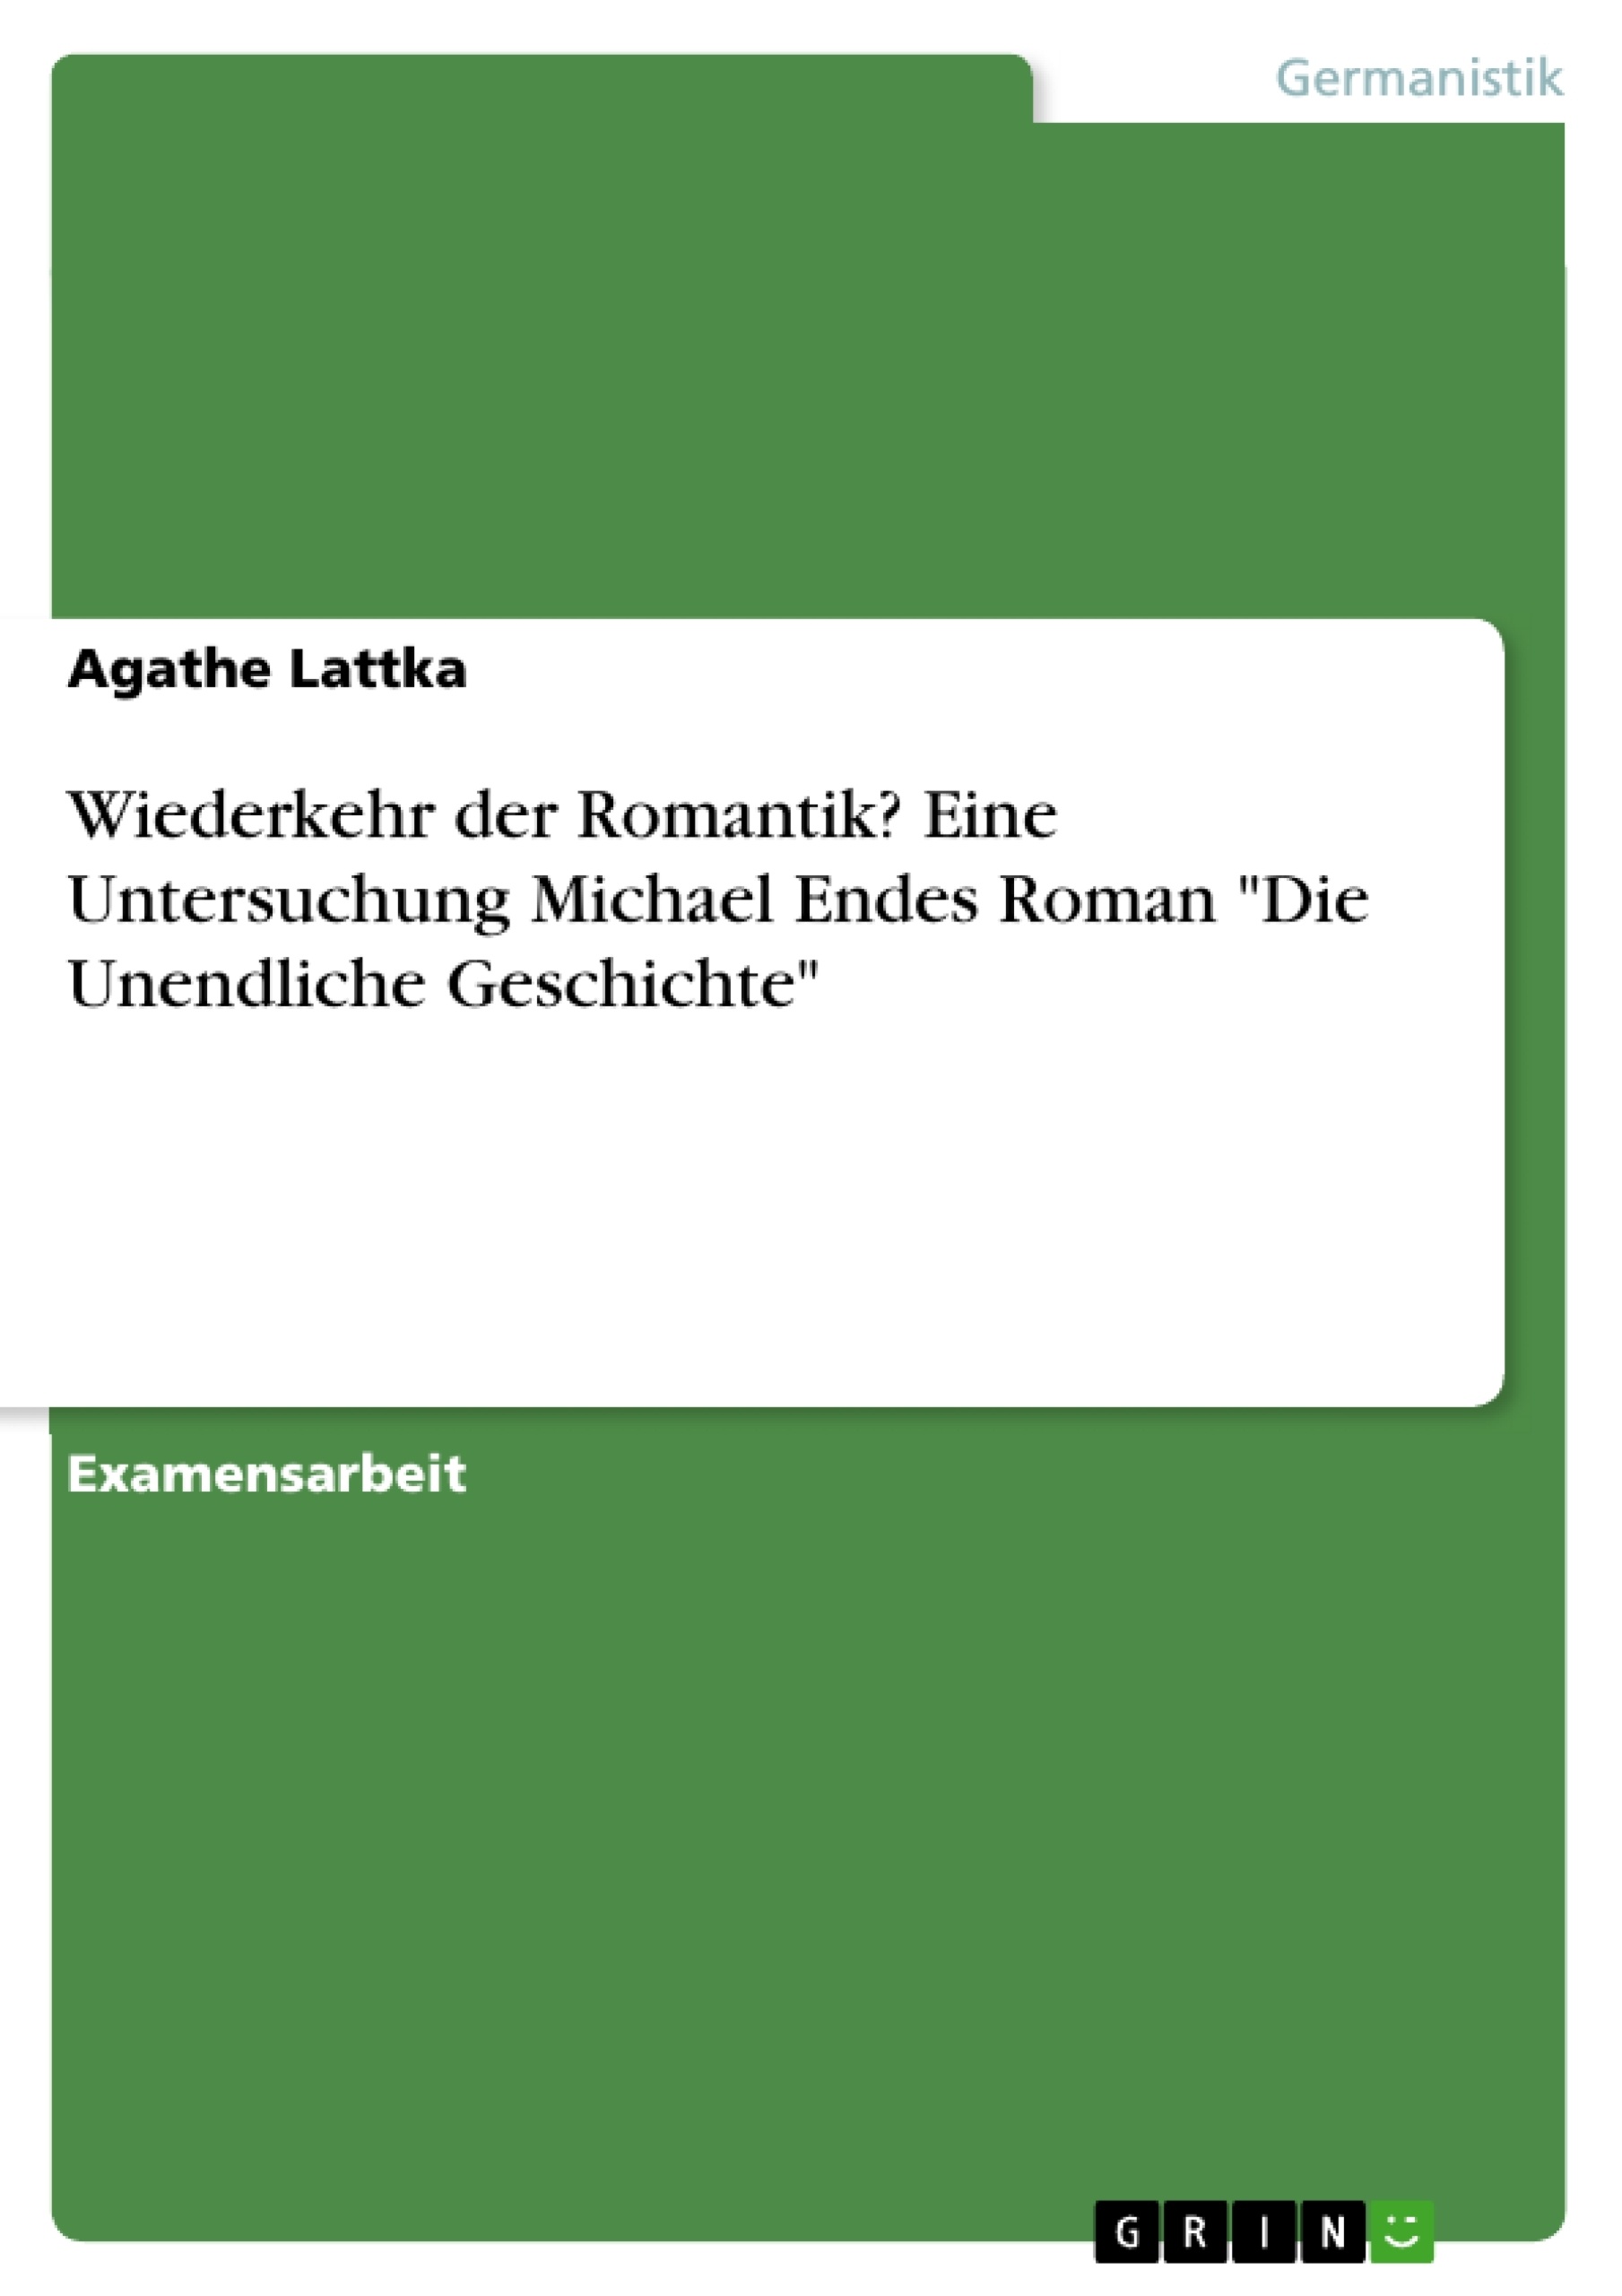 Titre: Wiederkehr der Romantik? Eine Untersuchung Michael Endes Roman "Die Unendliche Geschichte"